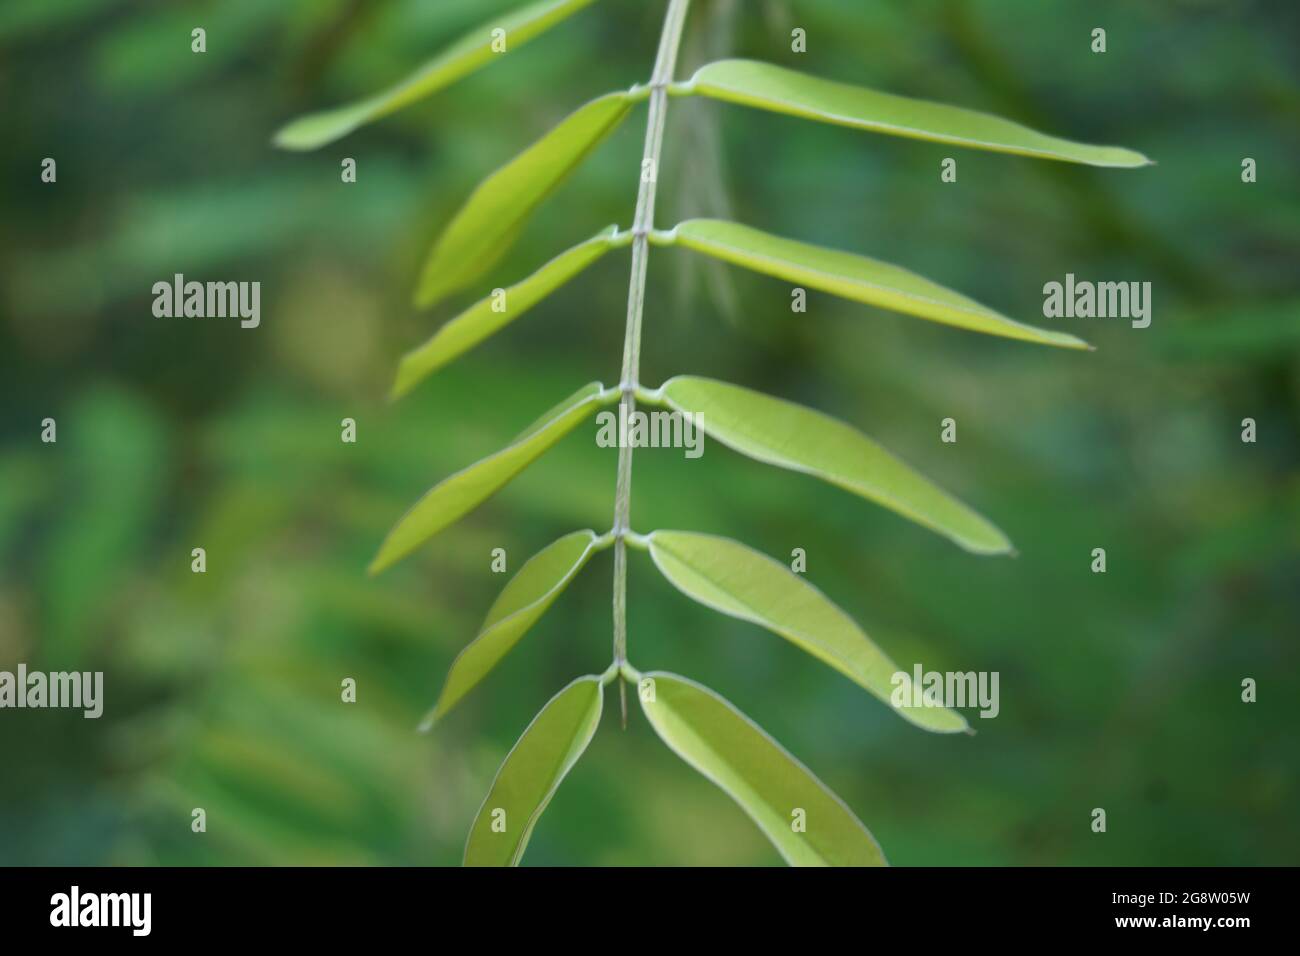 Senna siamea (Also known as Siamese cassia, kassod tree, cassod tree, cassia tree) with a natural background Stock Photo